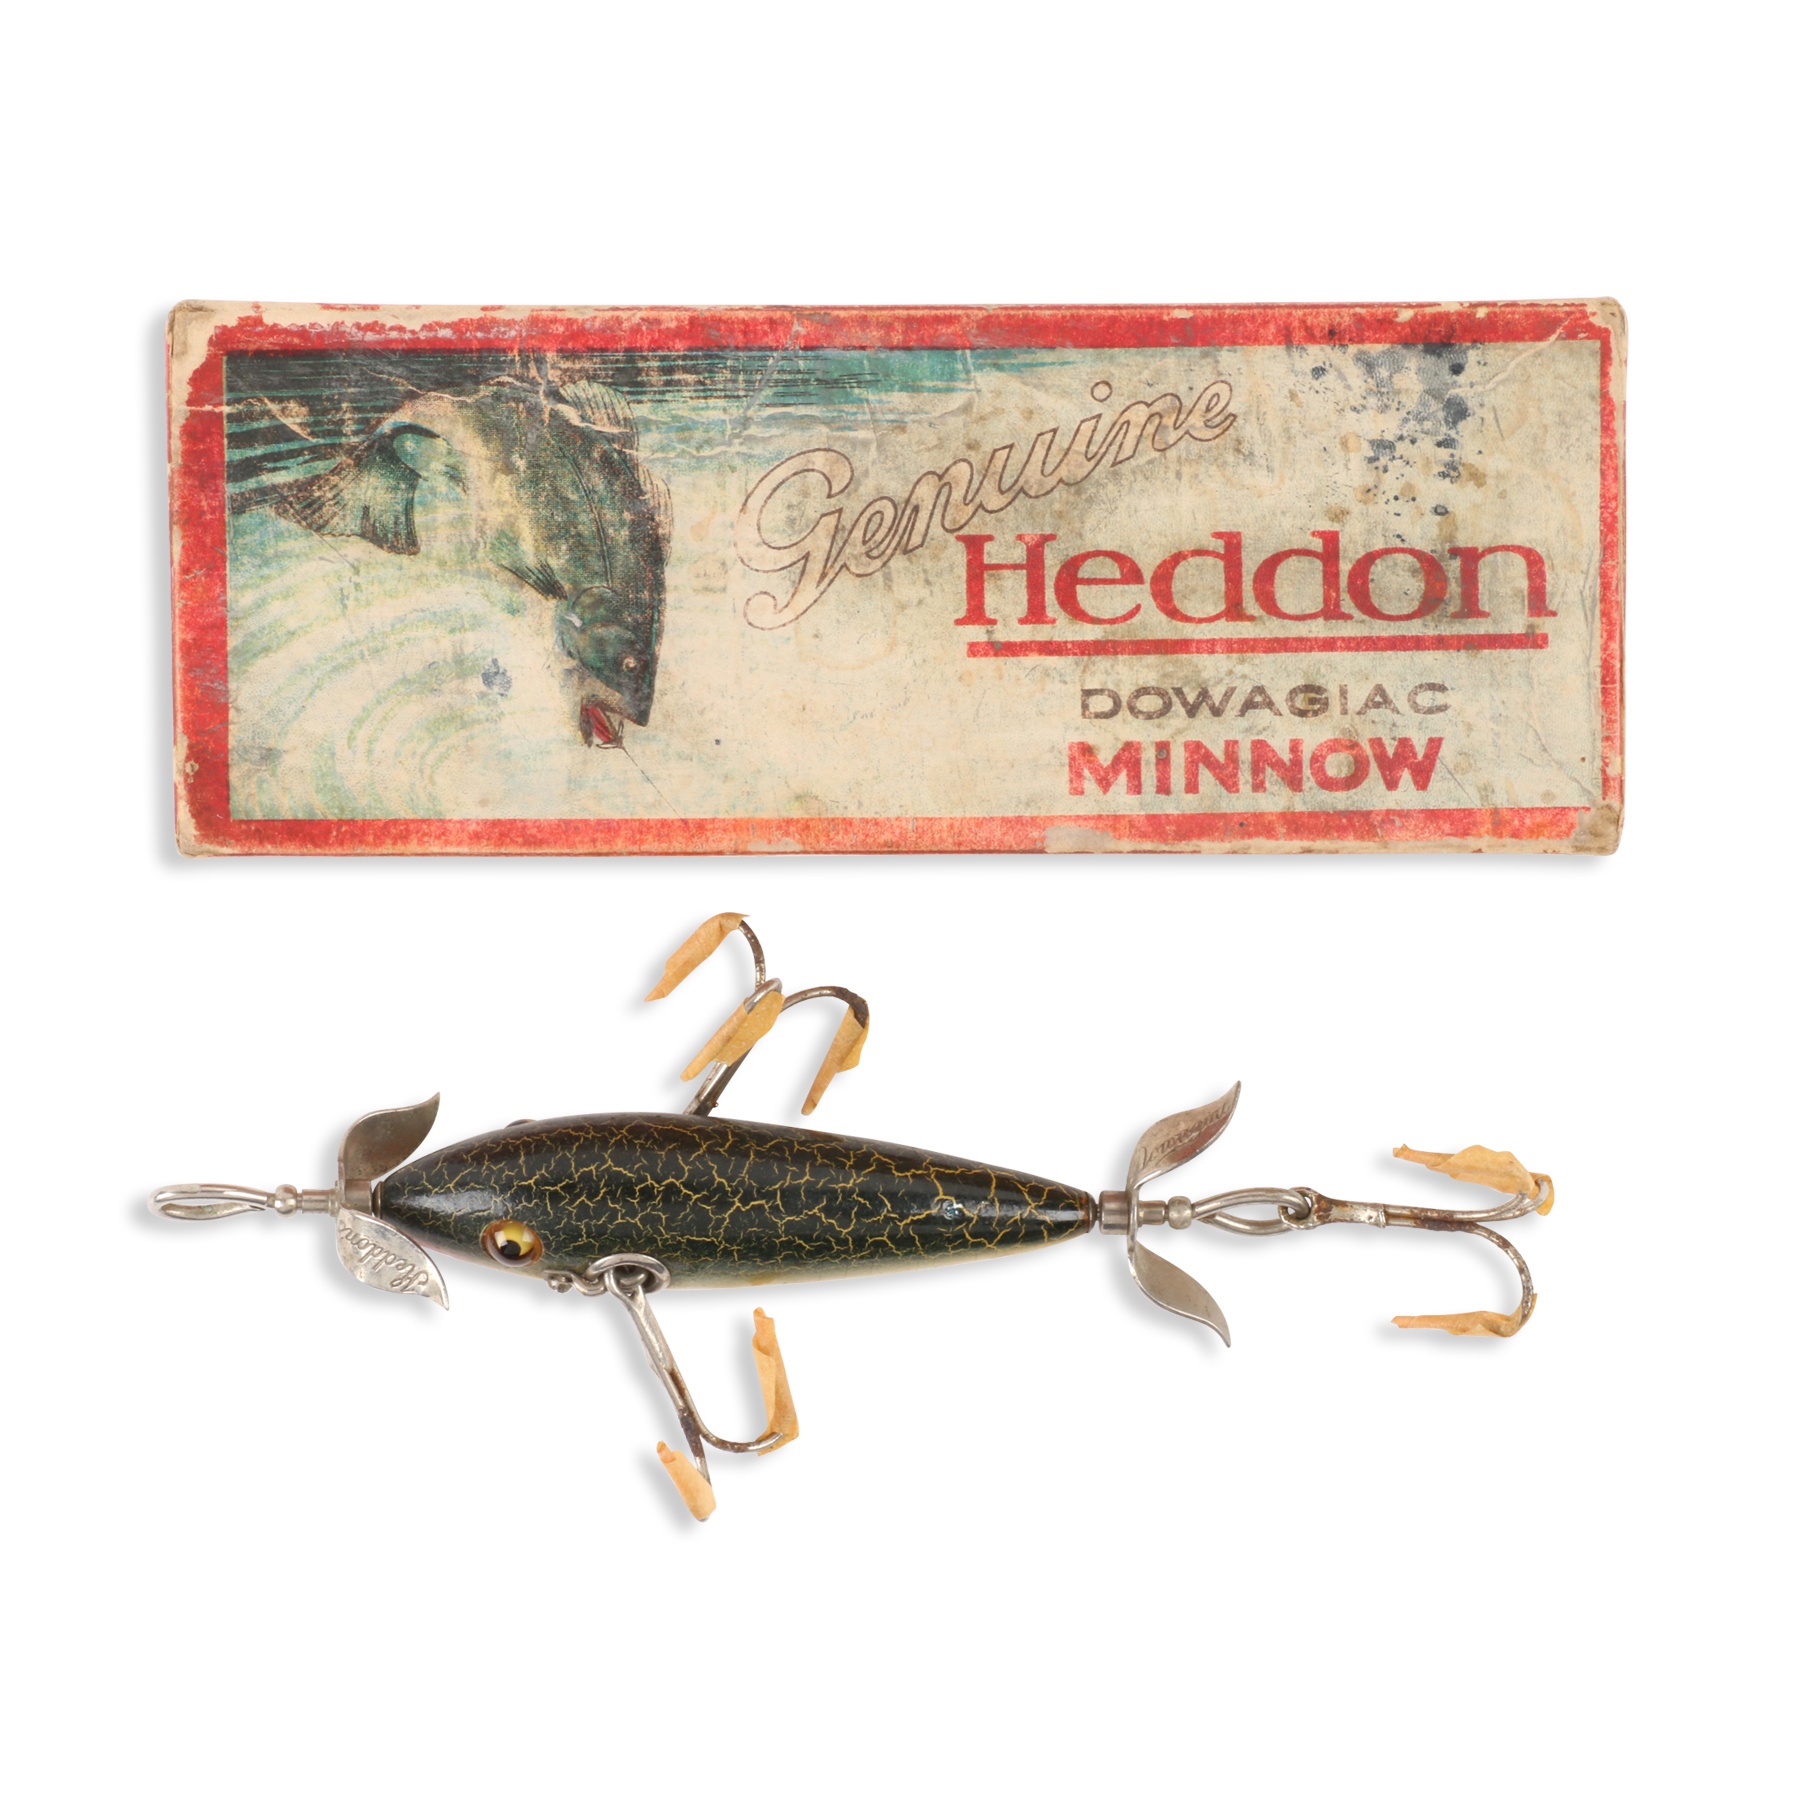 Heddon 100 in Box  Miller & Miller Auctions Ltd